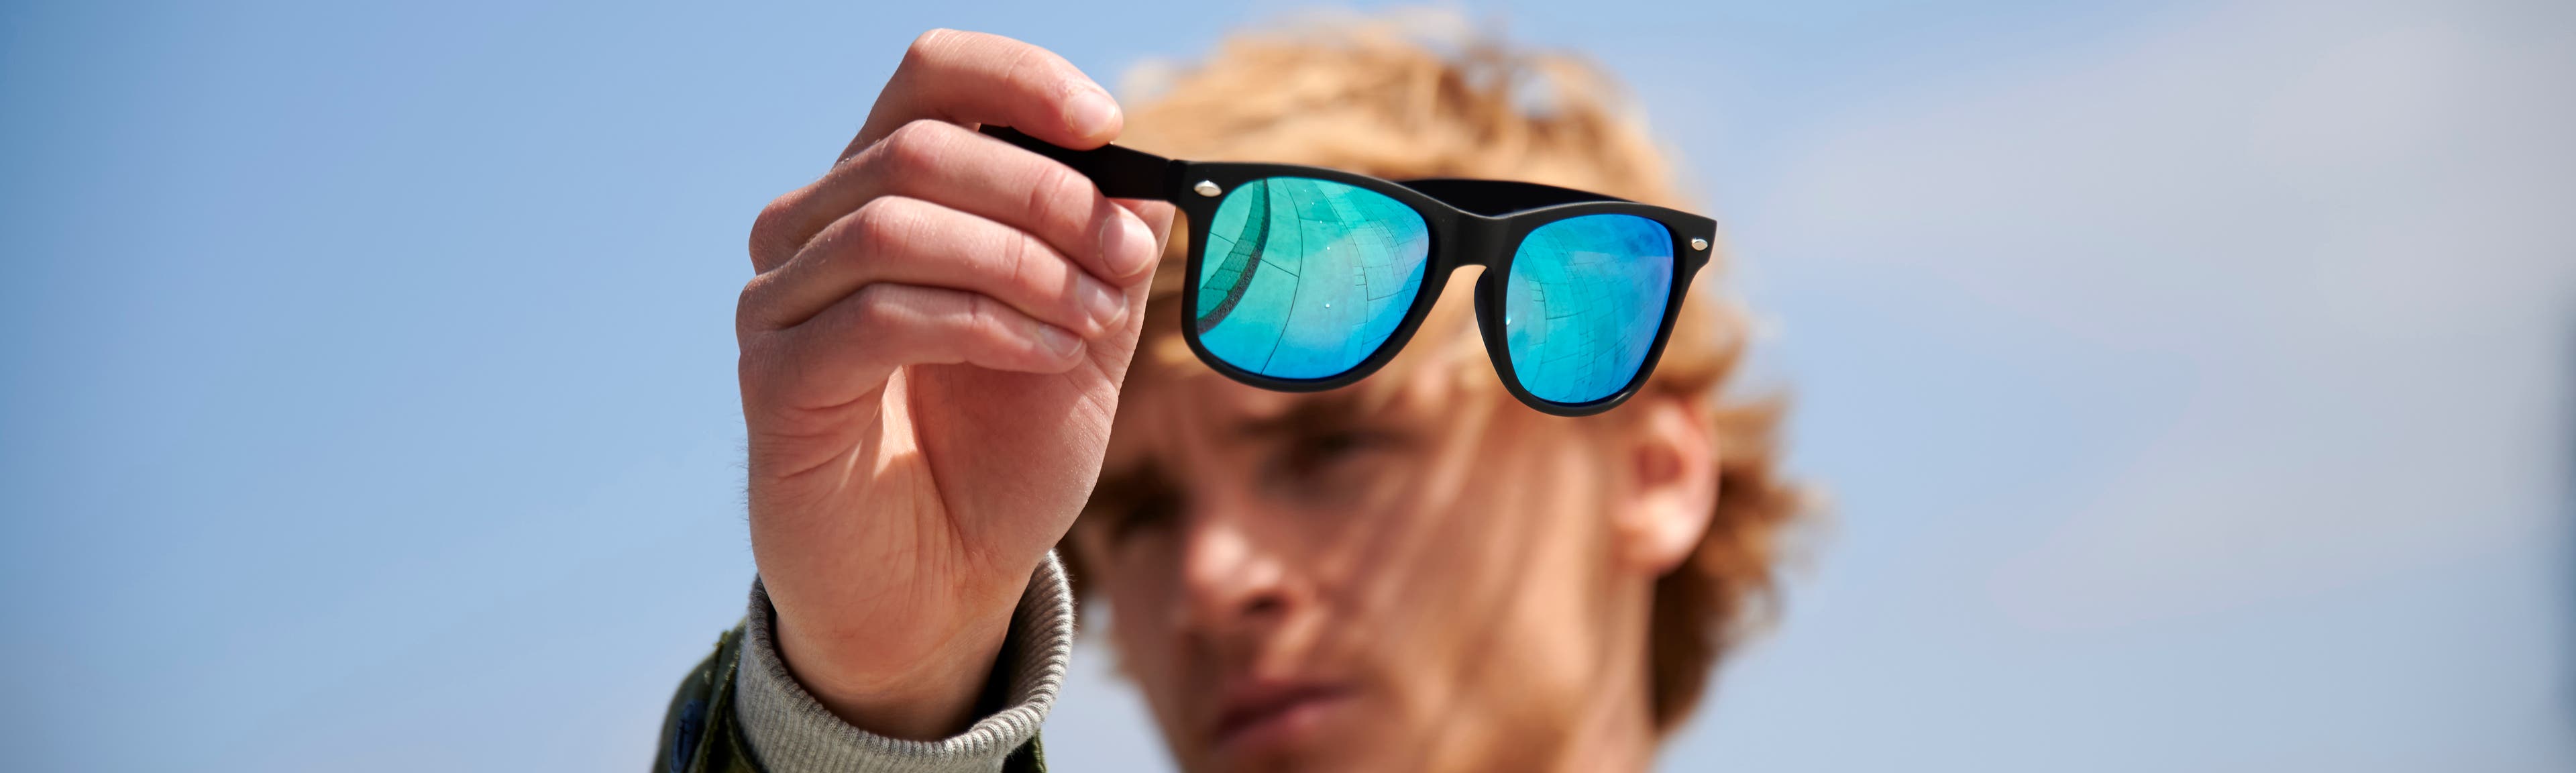 Solglasögon – skydda dina ögon mot solen